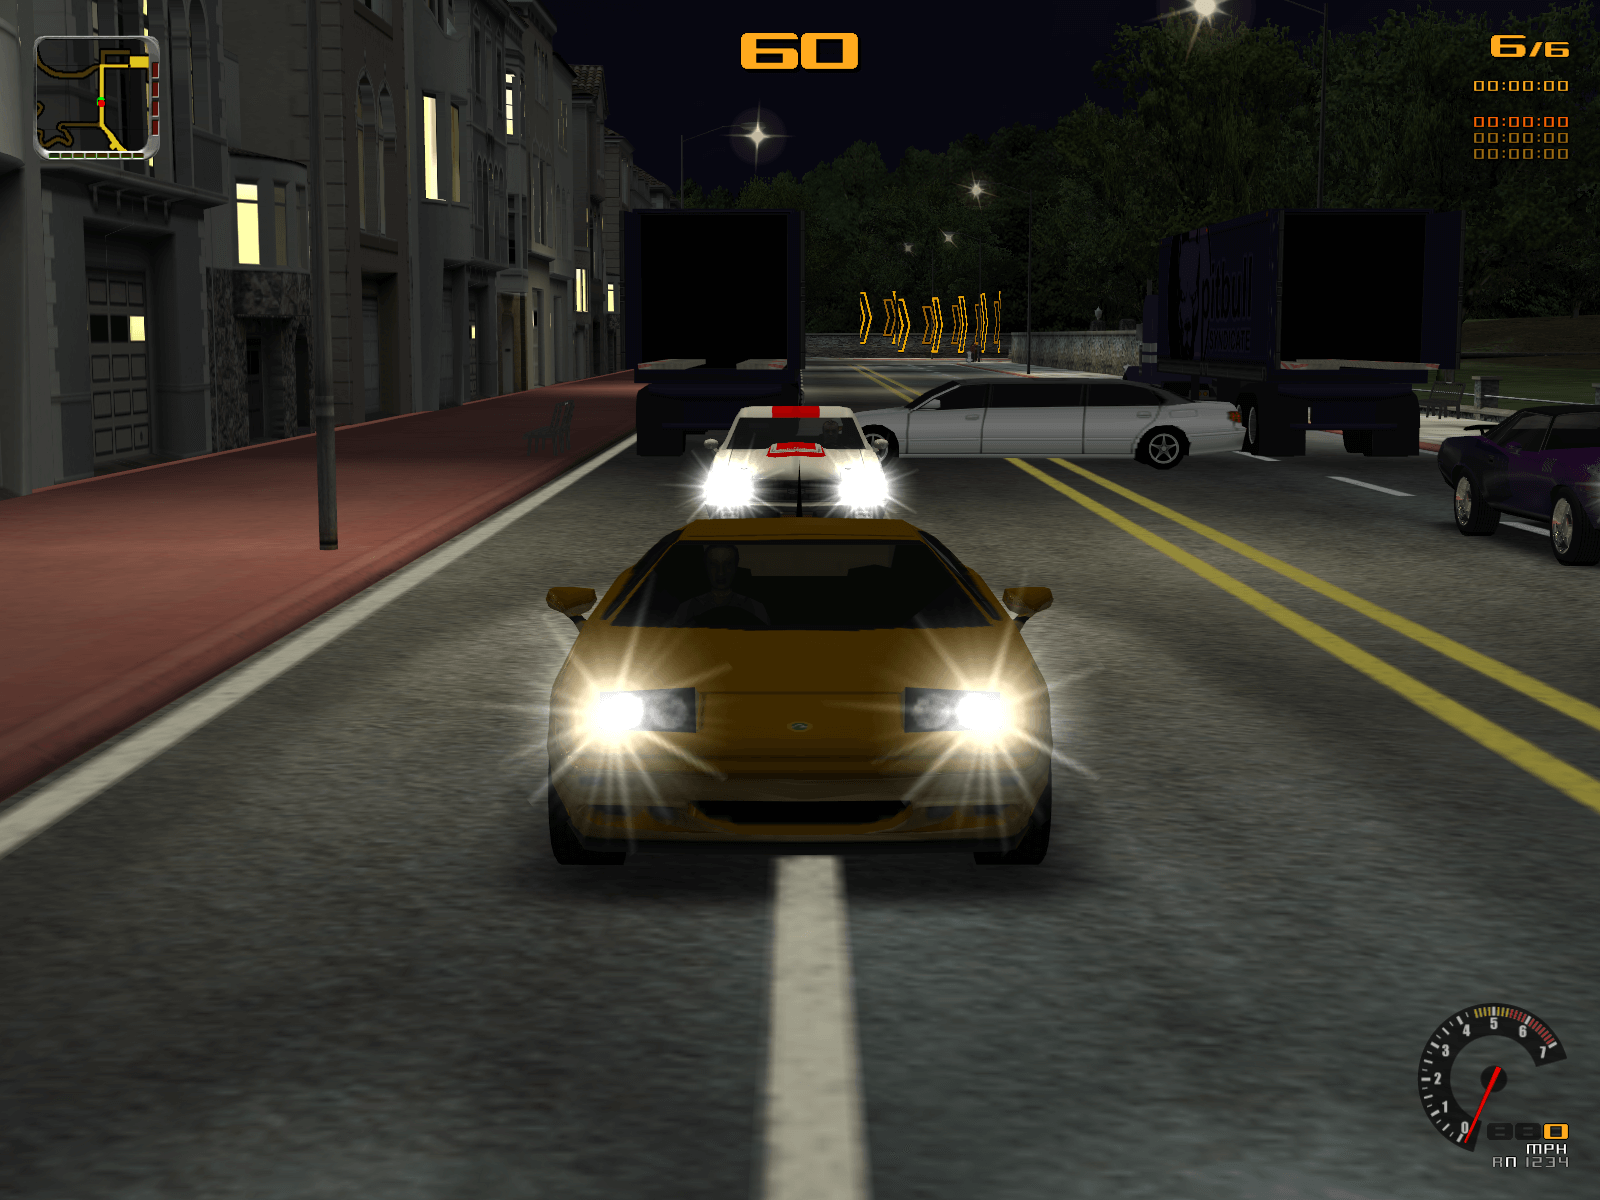 GTA San Andreas - 880 MB [Repack] v2.0 - Full PC Game Free Download